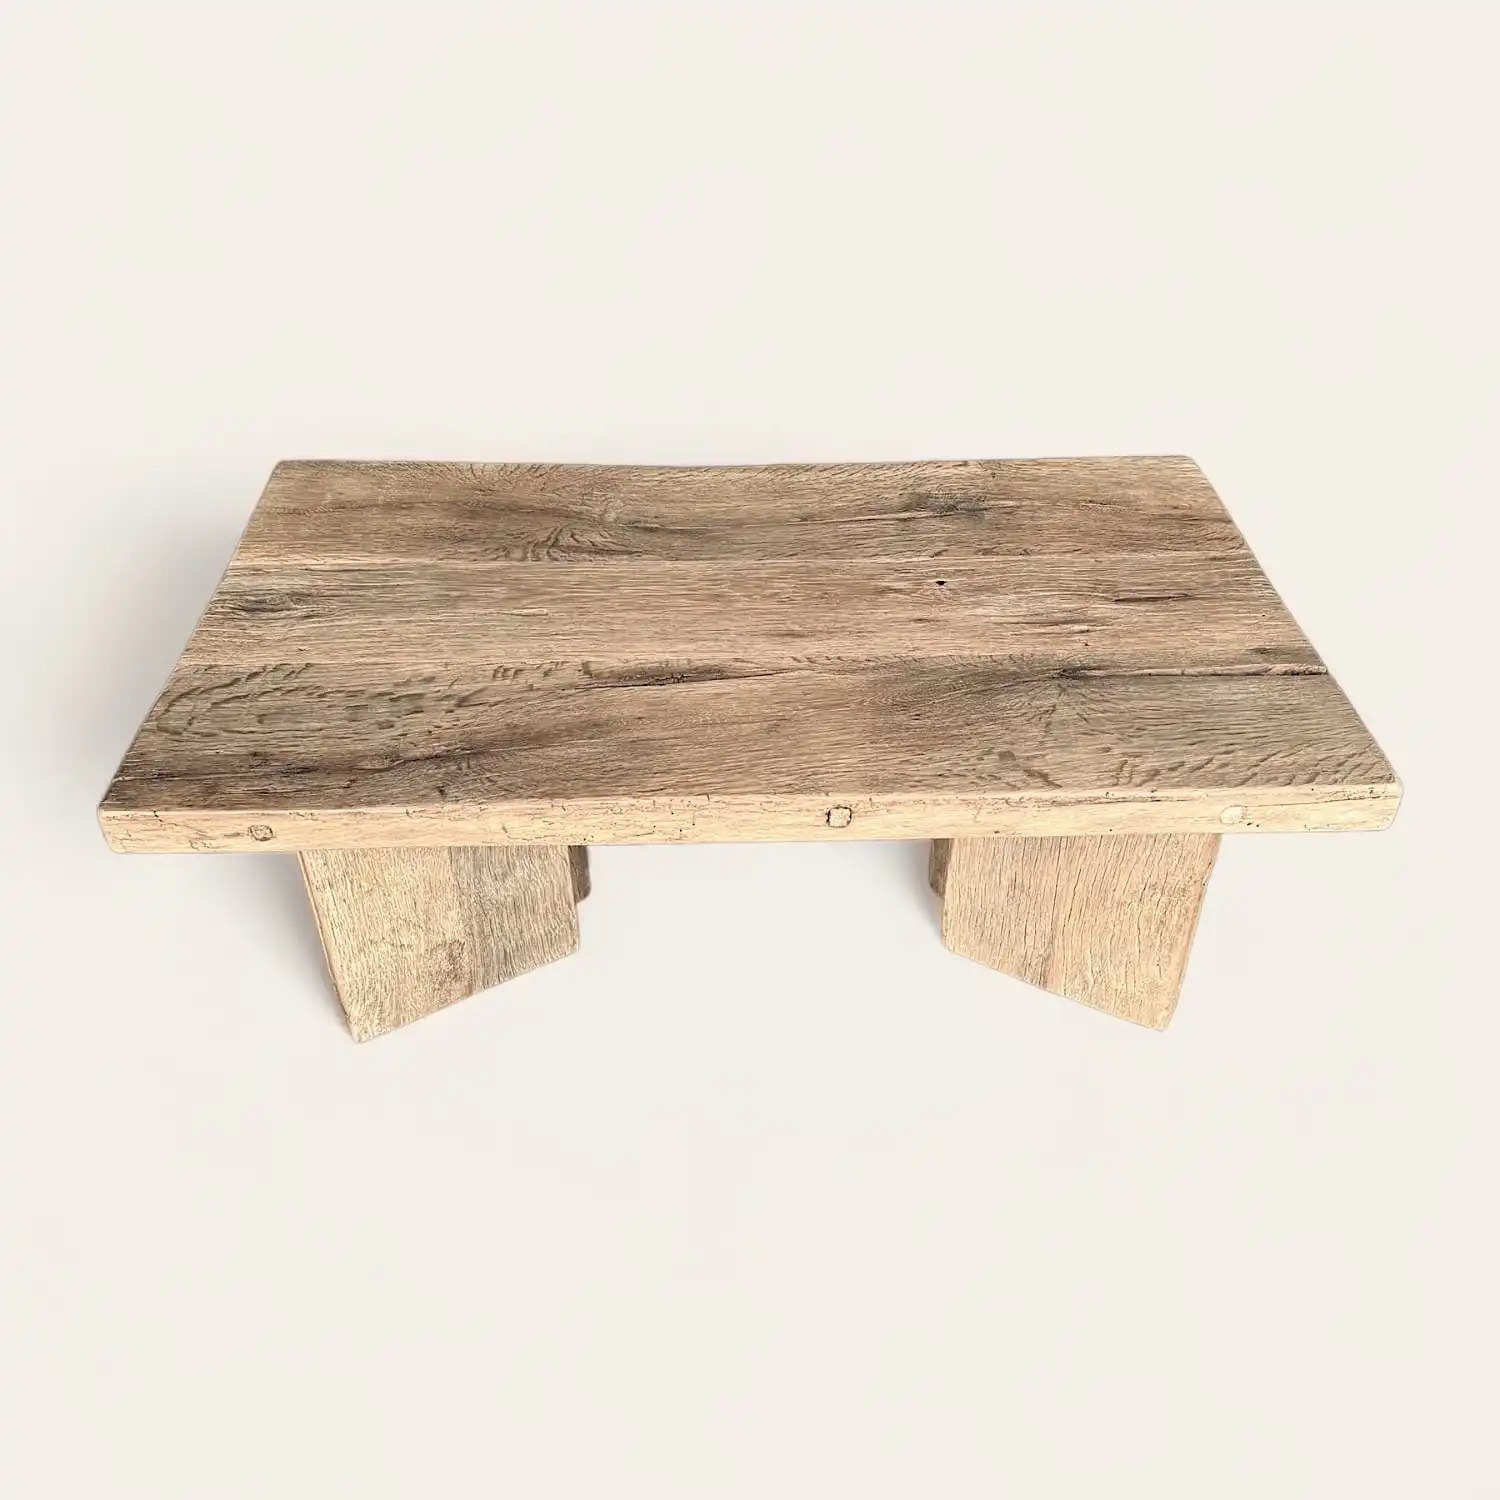  Une petite table basse rustique en bois sur fond blanc. 